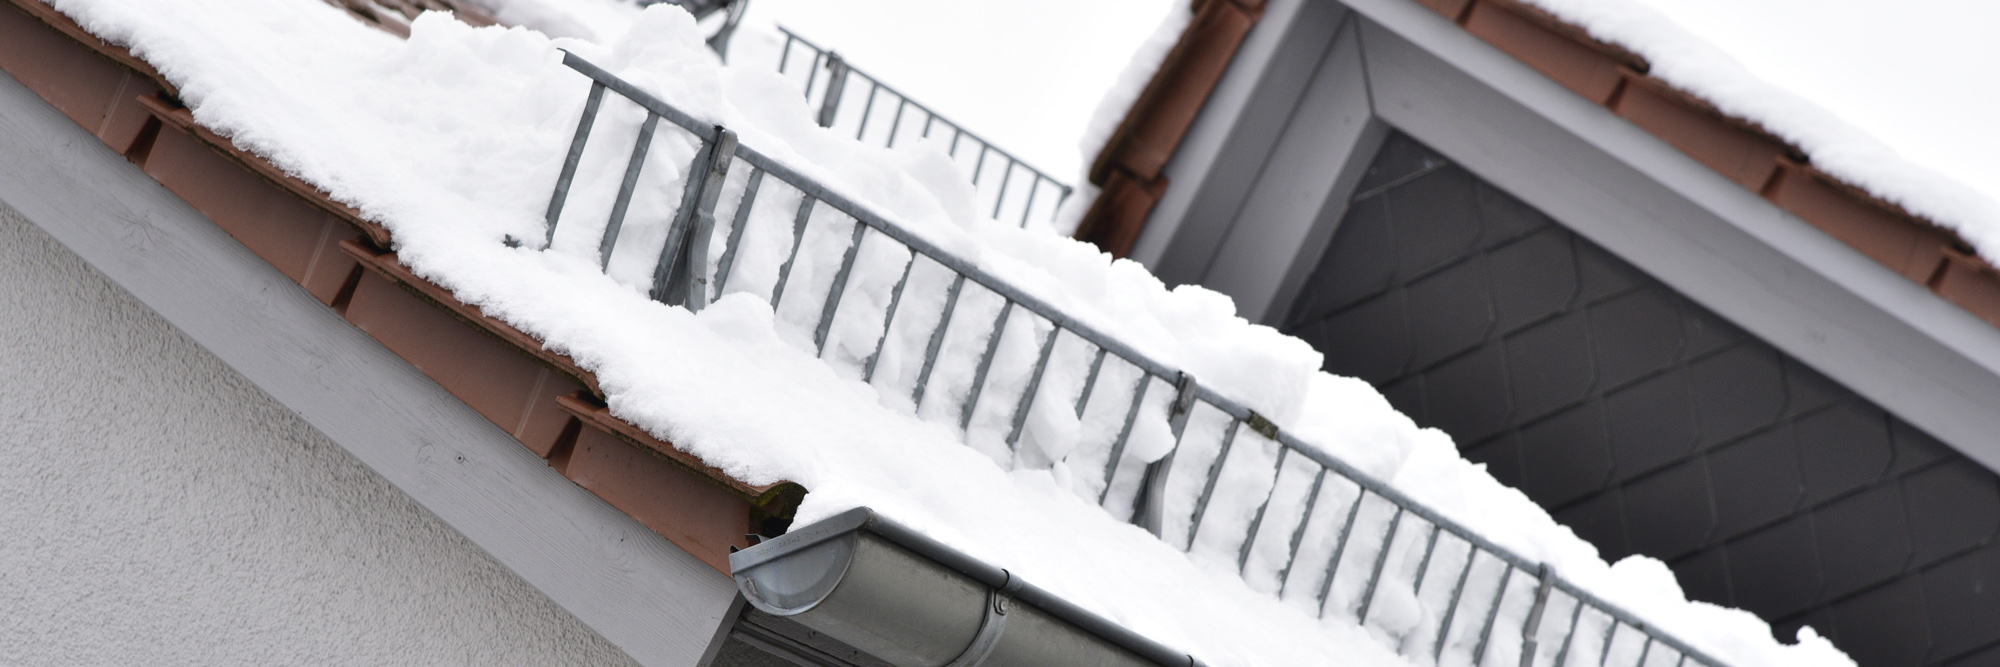 Sicherung gegen Dachlawinen an einem schneebedeckten Haus